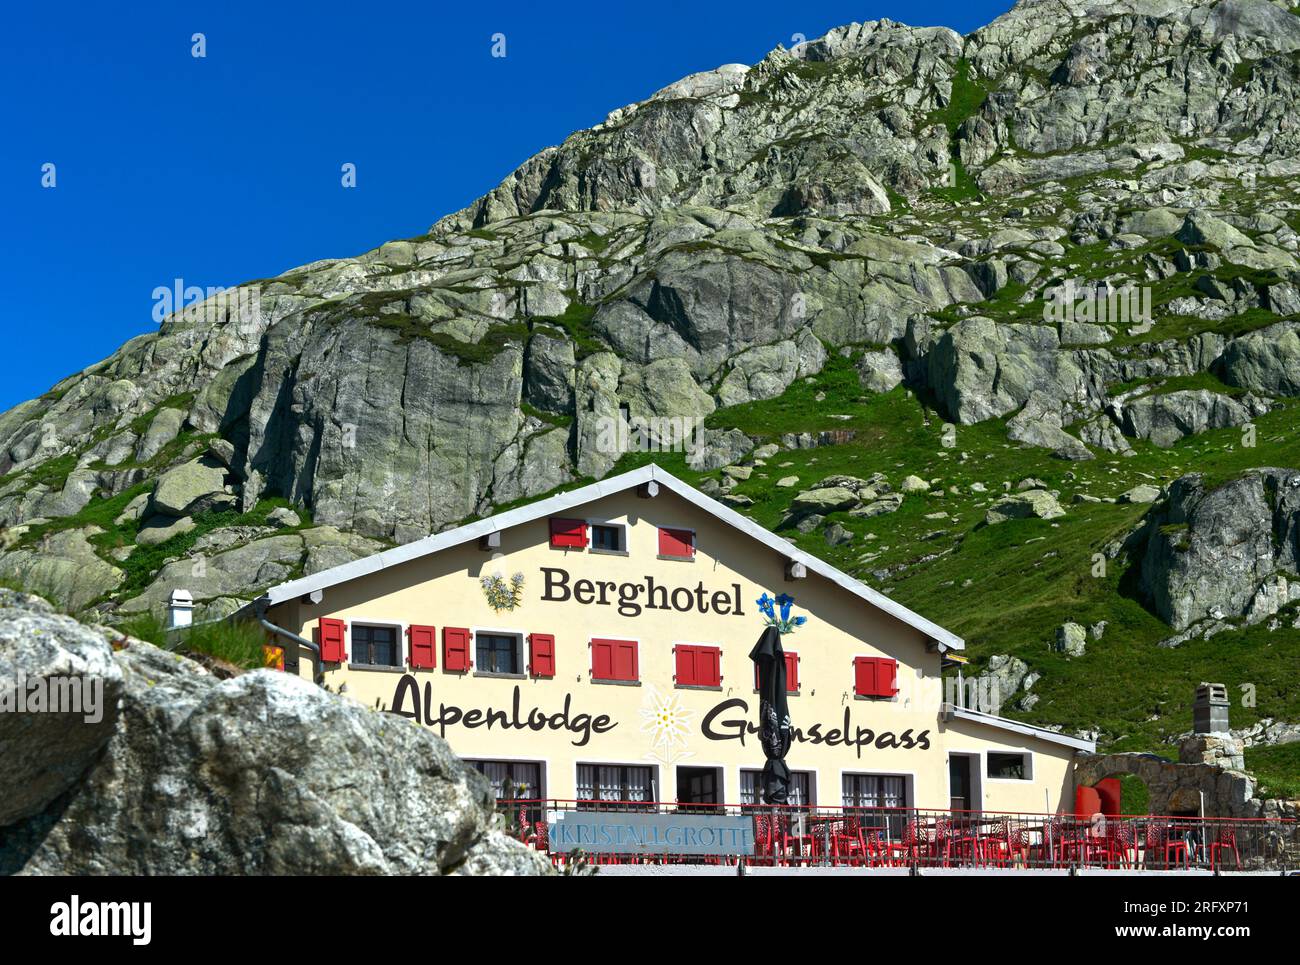 Berghütte und Hotel Grimselpass, Oberwald, Wallis, Schweiz Stockfoto